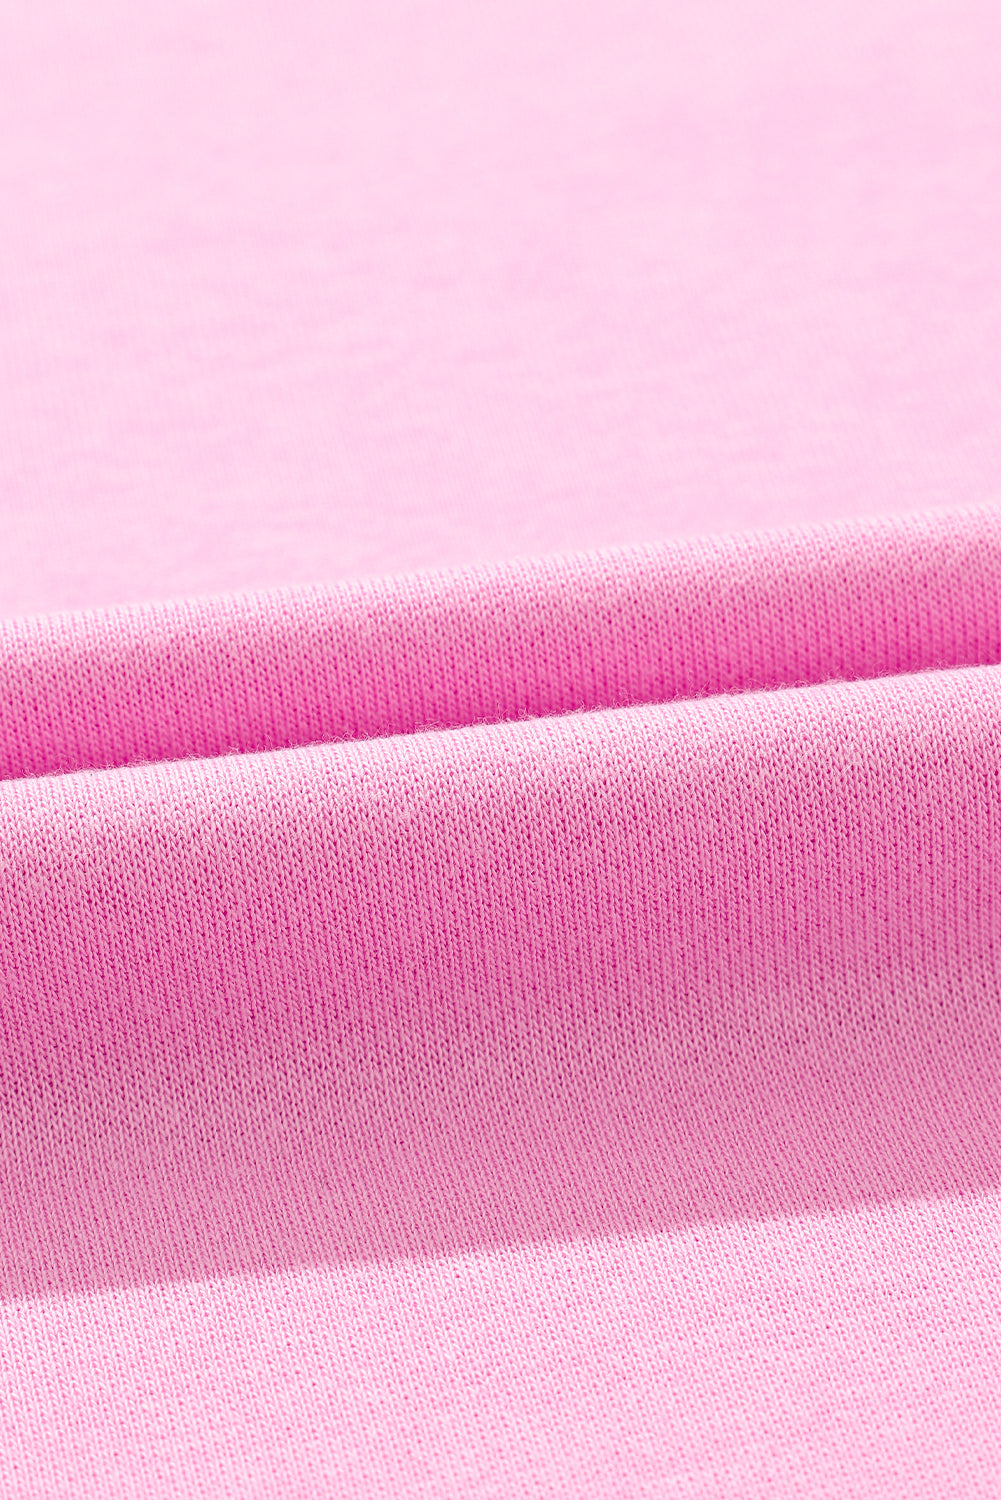 Pulover z dolgimi rokavi v roza barvi z bleščicami